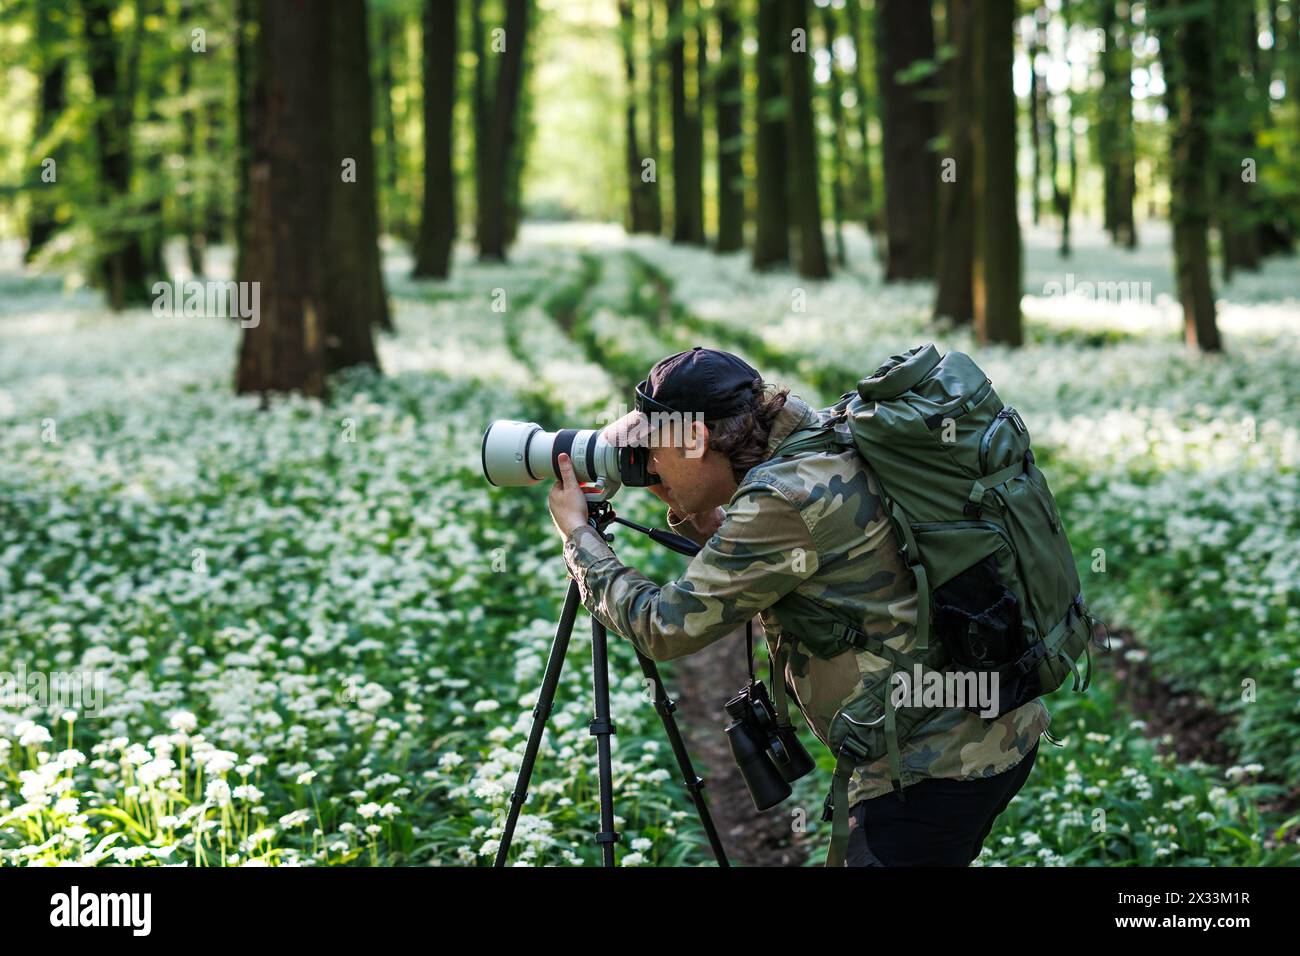 Photographe de paysage et de la faune avec sac à dos portant une chemise de camouflage. Homme avec appareil photo sur trépied photographiant la nature dans les bois de printemps fleuris Banque D'Images